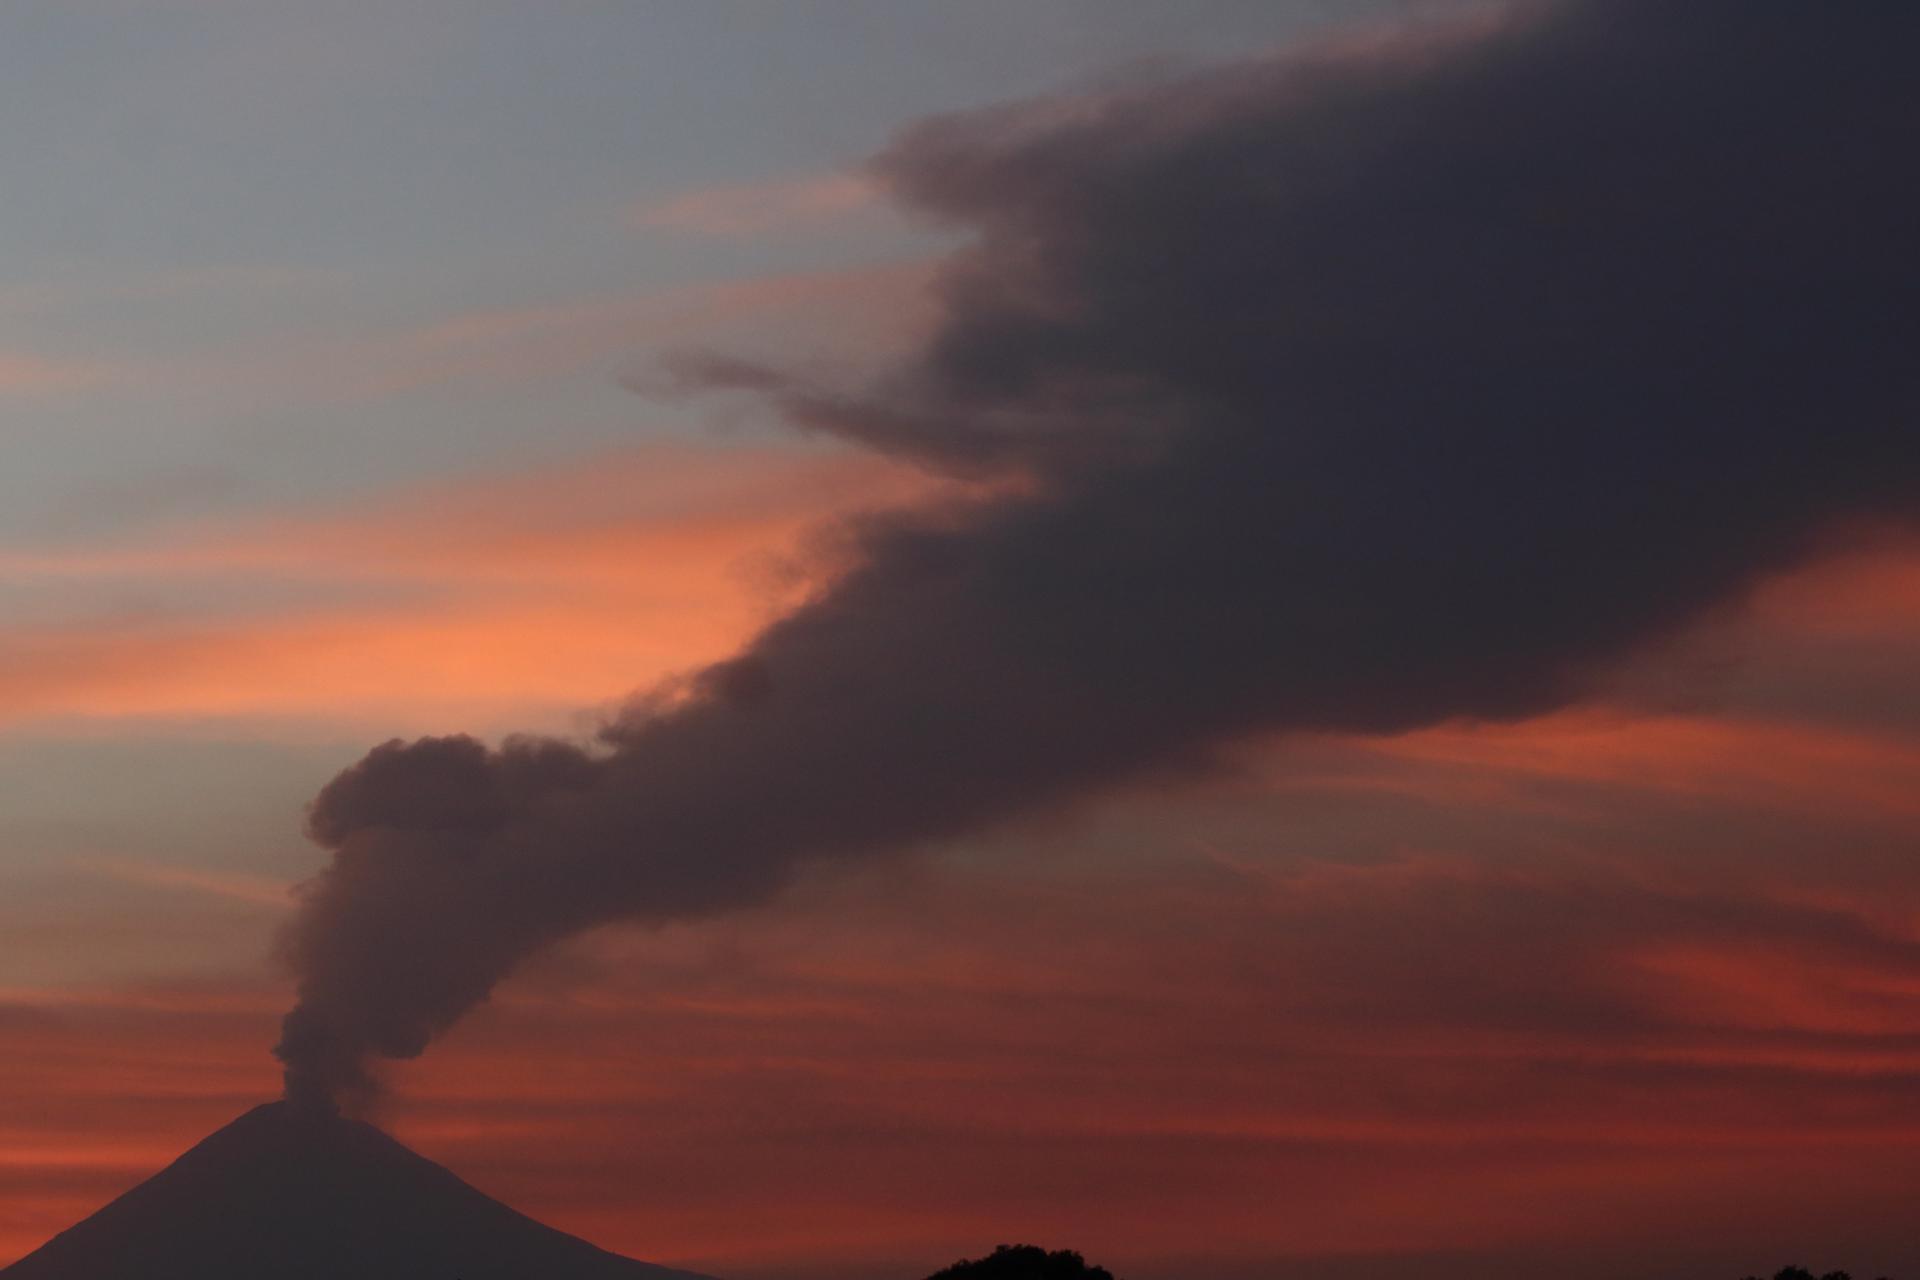 Meksikada Popokatepetl vulkanı yenidən püskürməyə başlayıb